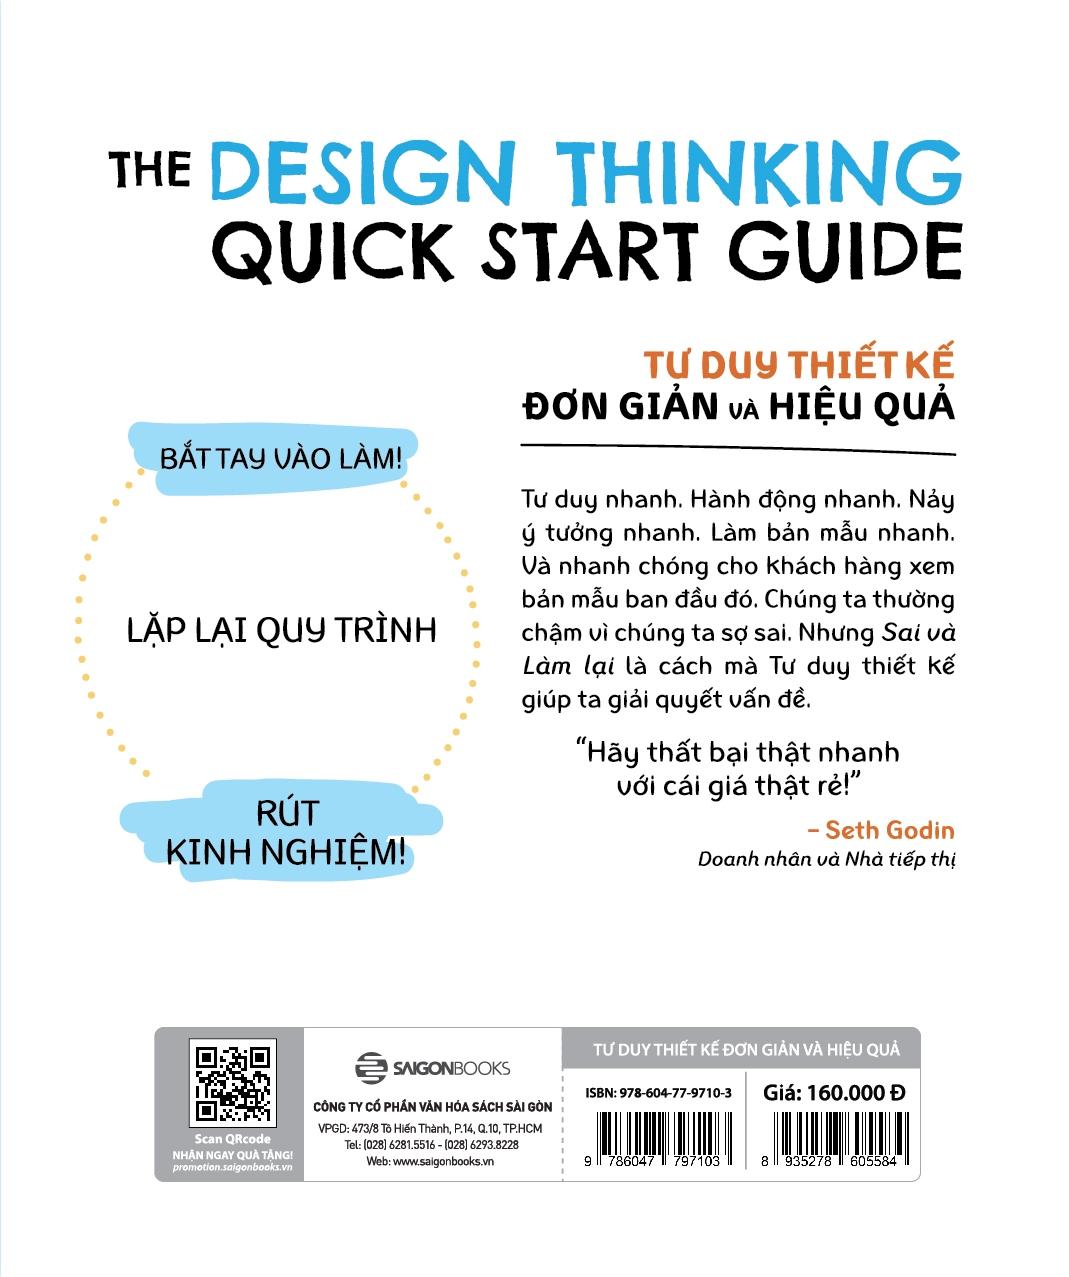 Tư Duy Thiết Kế Đơn Giản Và Hiệu Quả - The Design Thinking Quick Start Guide